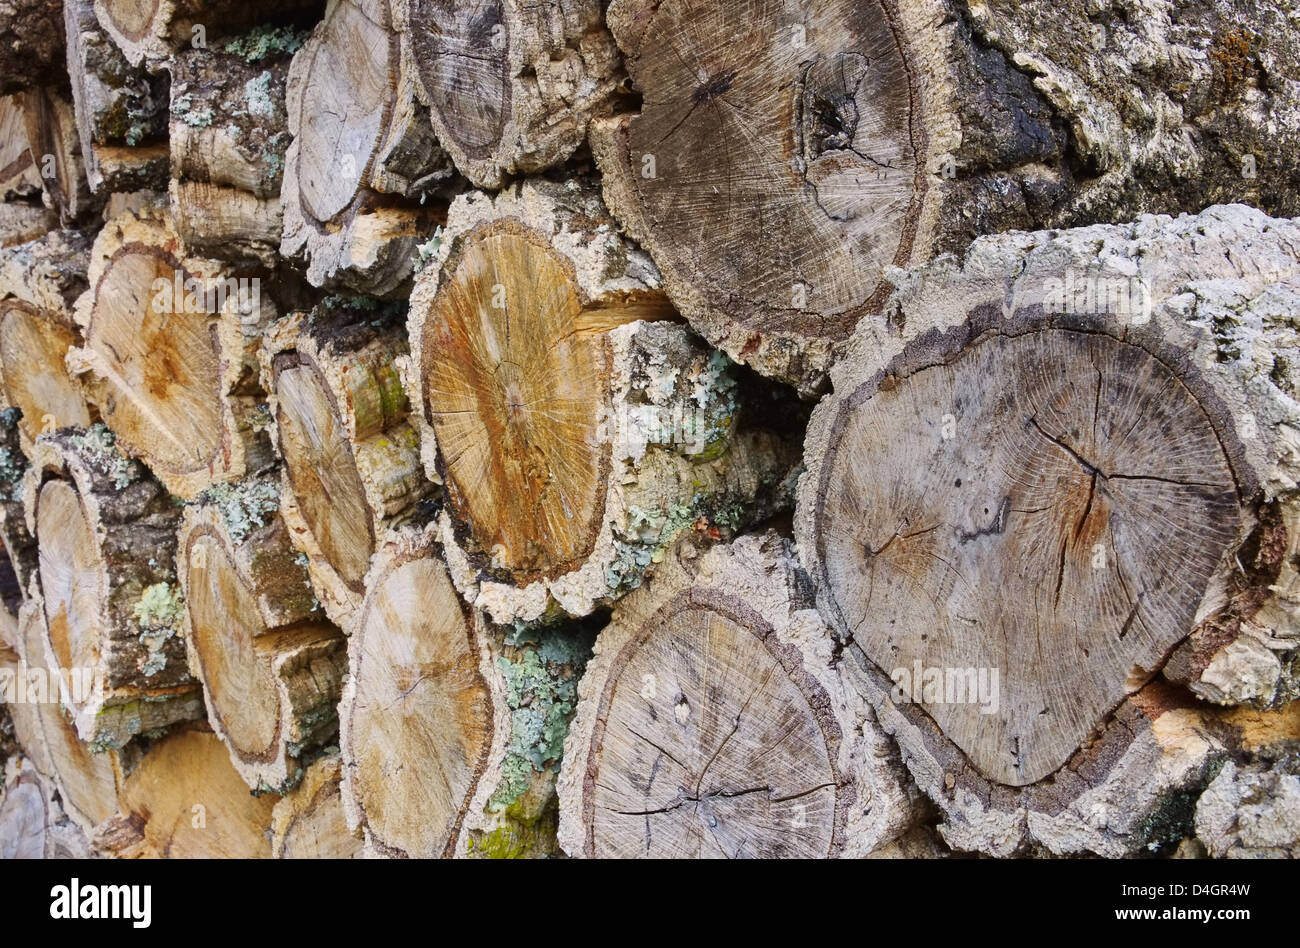 Holzstapel Korkeiche - pile de bois de chêne liège 02 Banque D'Images